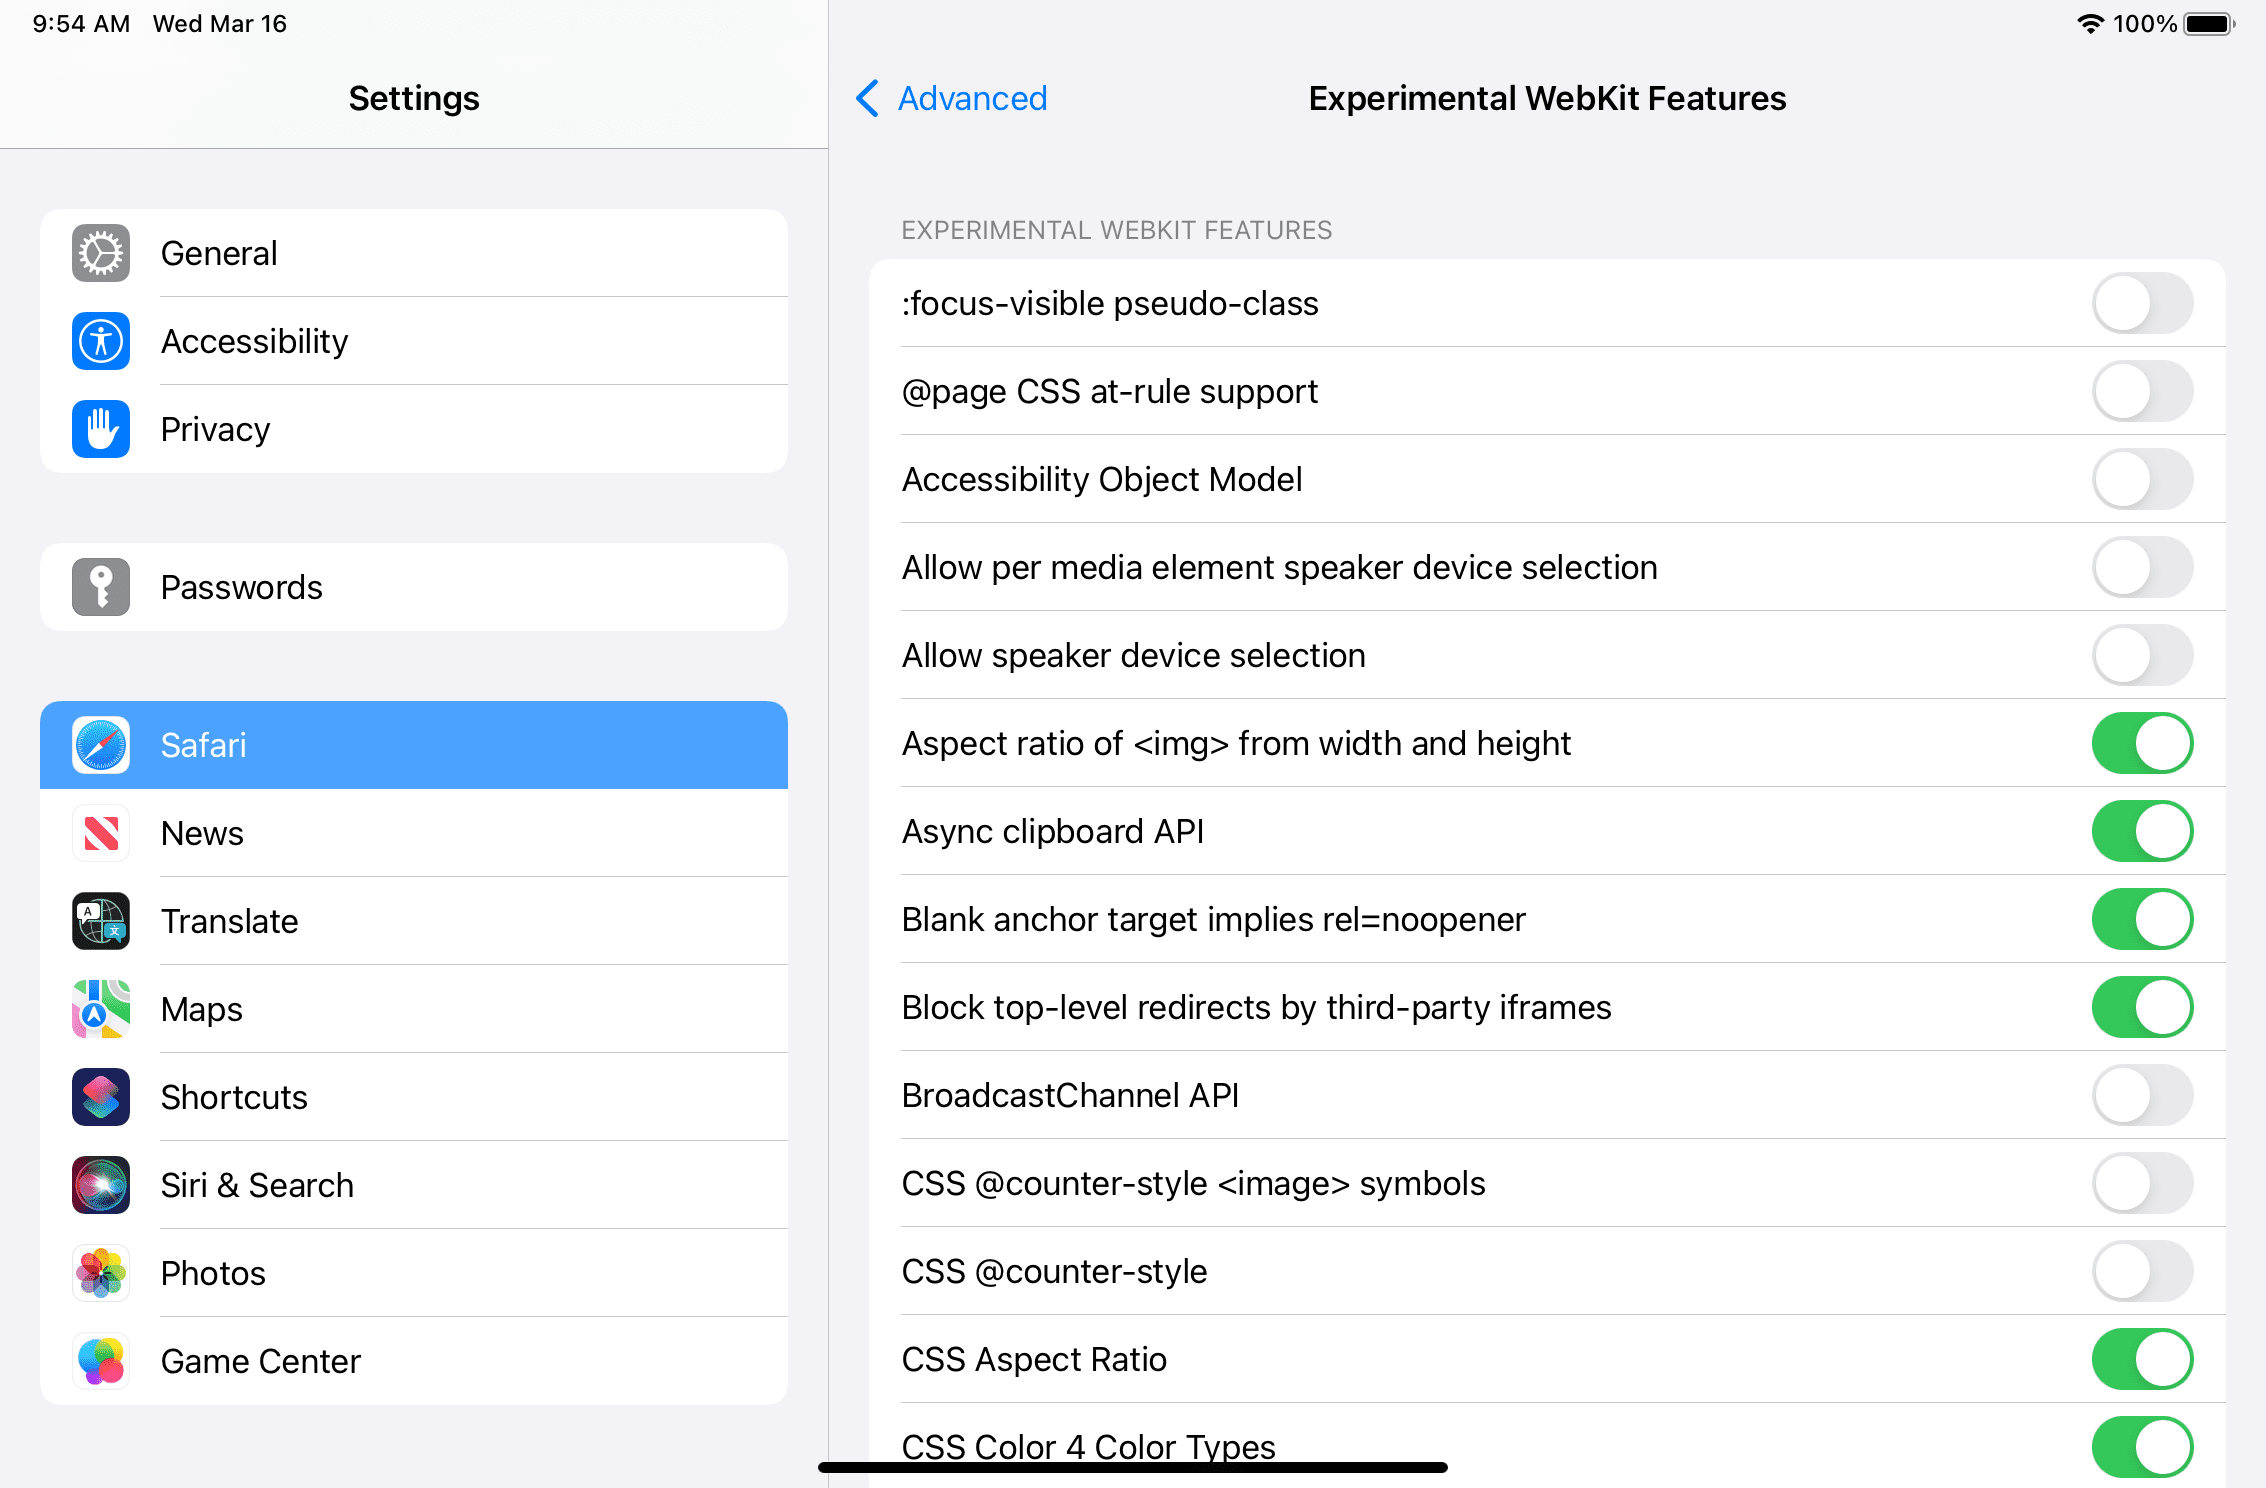 Funciones experimentales disponibles en Safari para iPadOS.